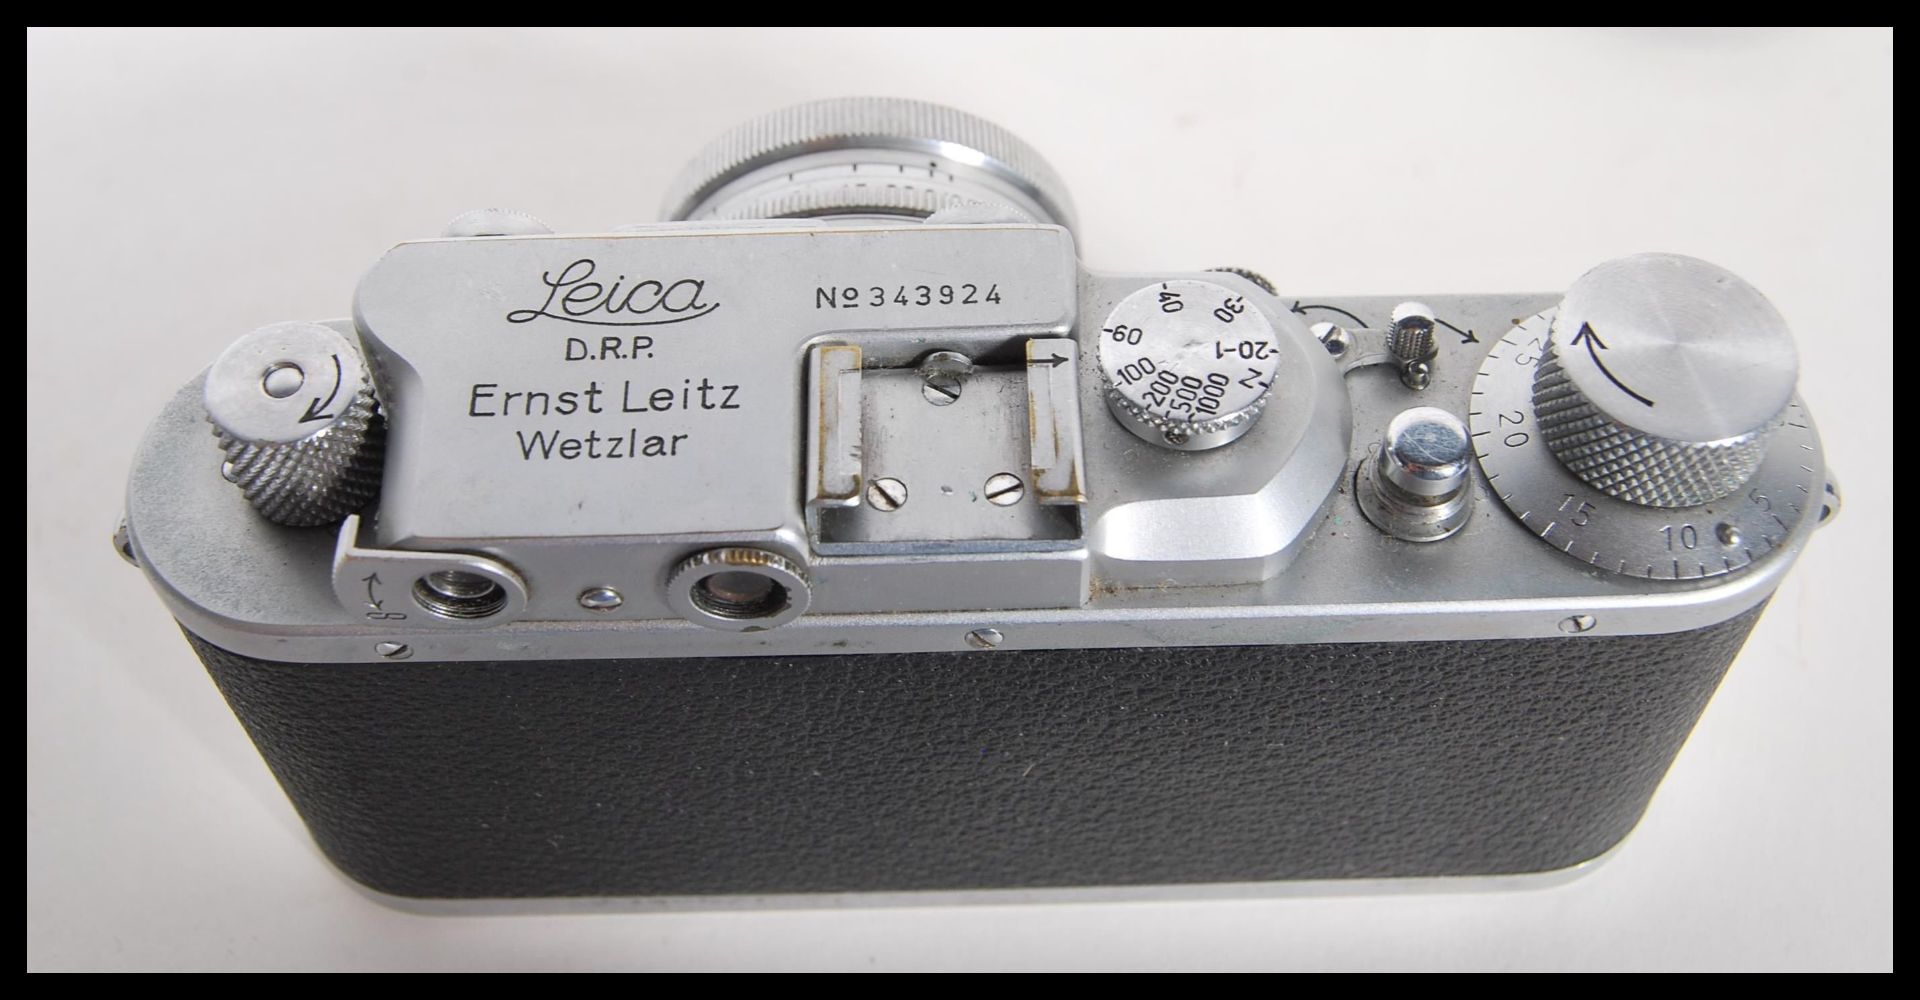 A Leica lll D.P.R Rangefinder chrome camera by Ernst Leitz Wetzlar Germany, Serial number 343924. - Bild 4 aus 7